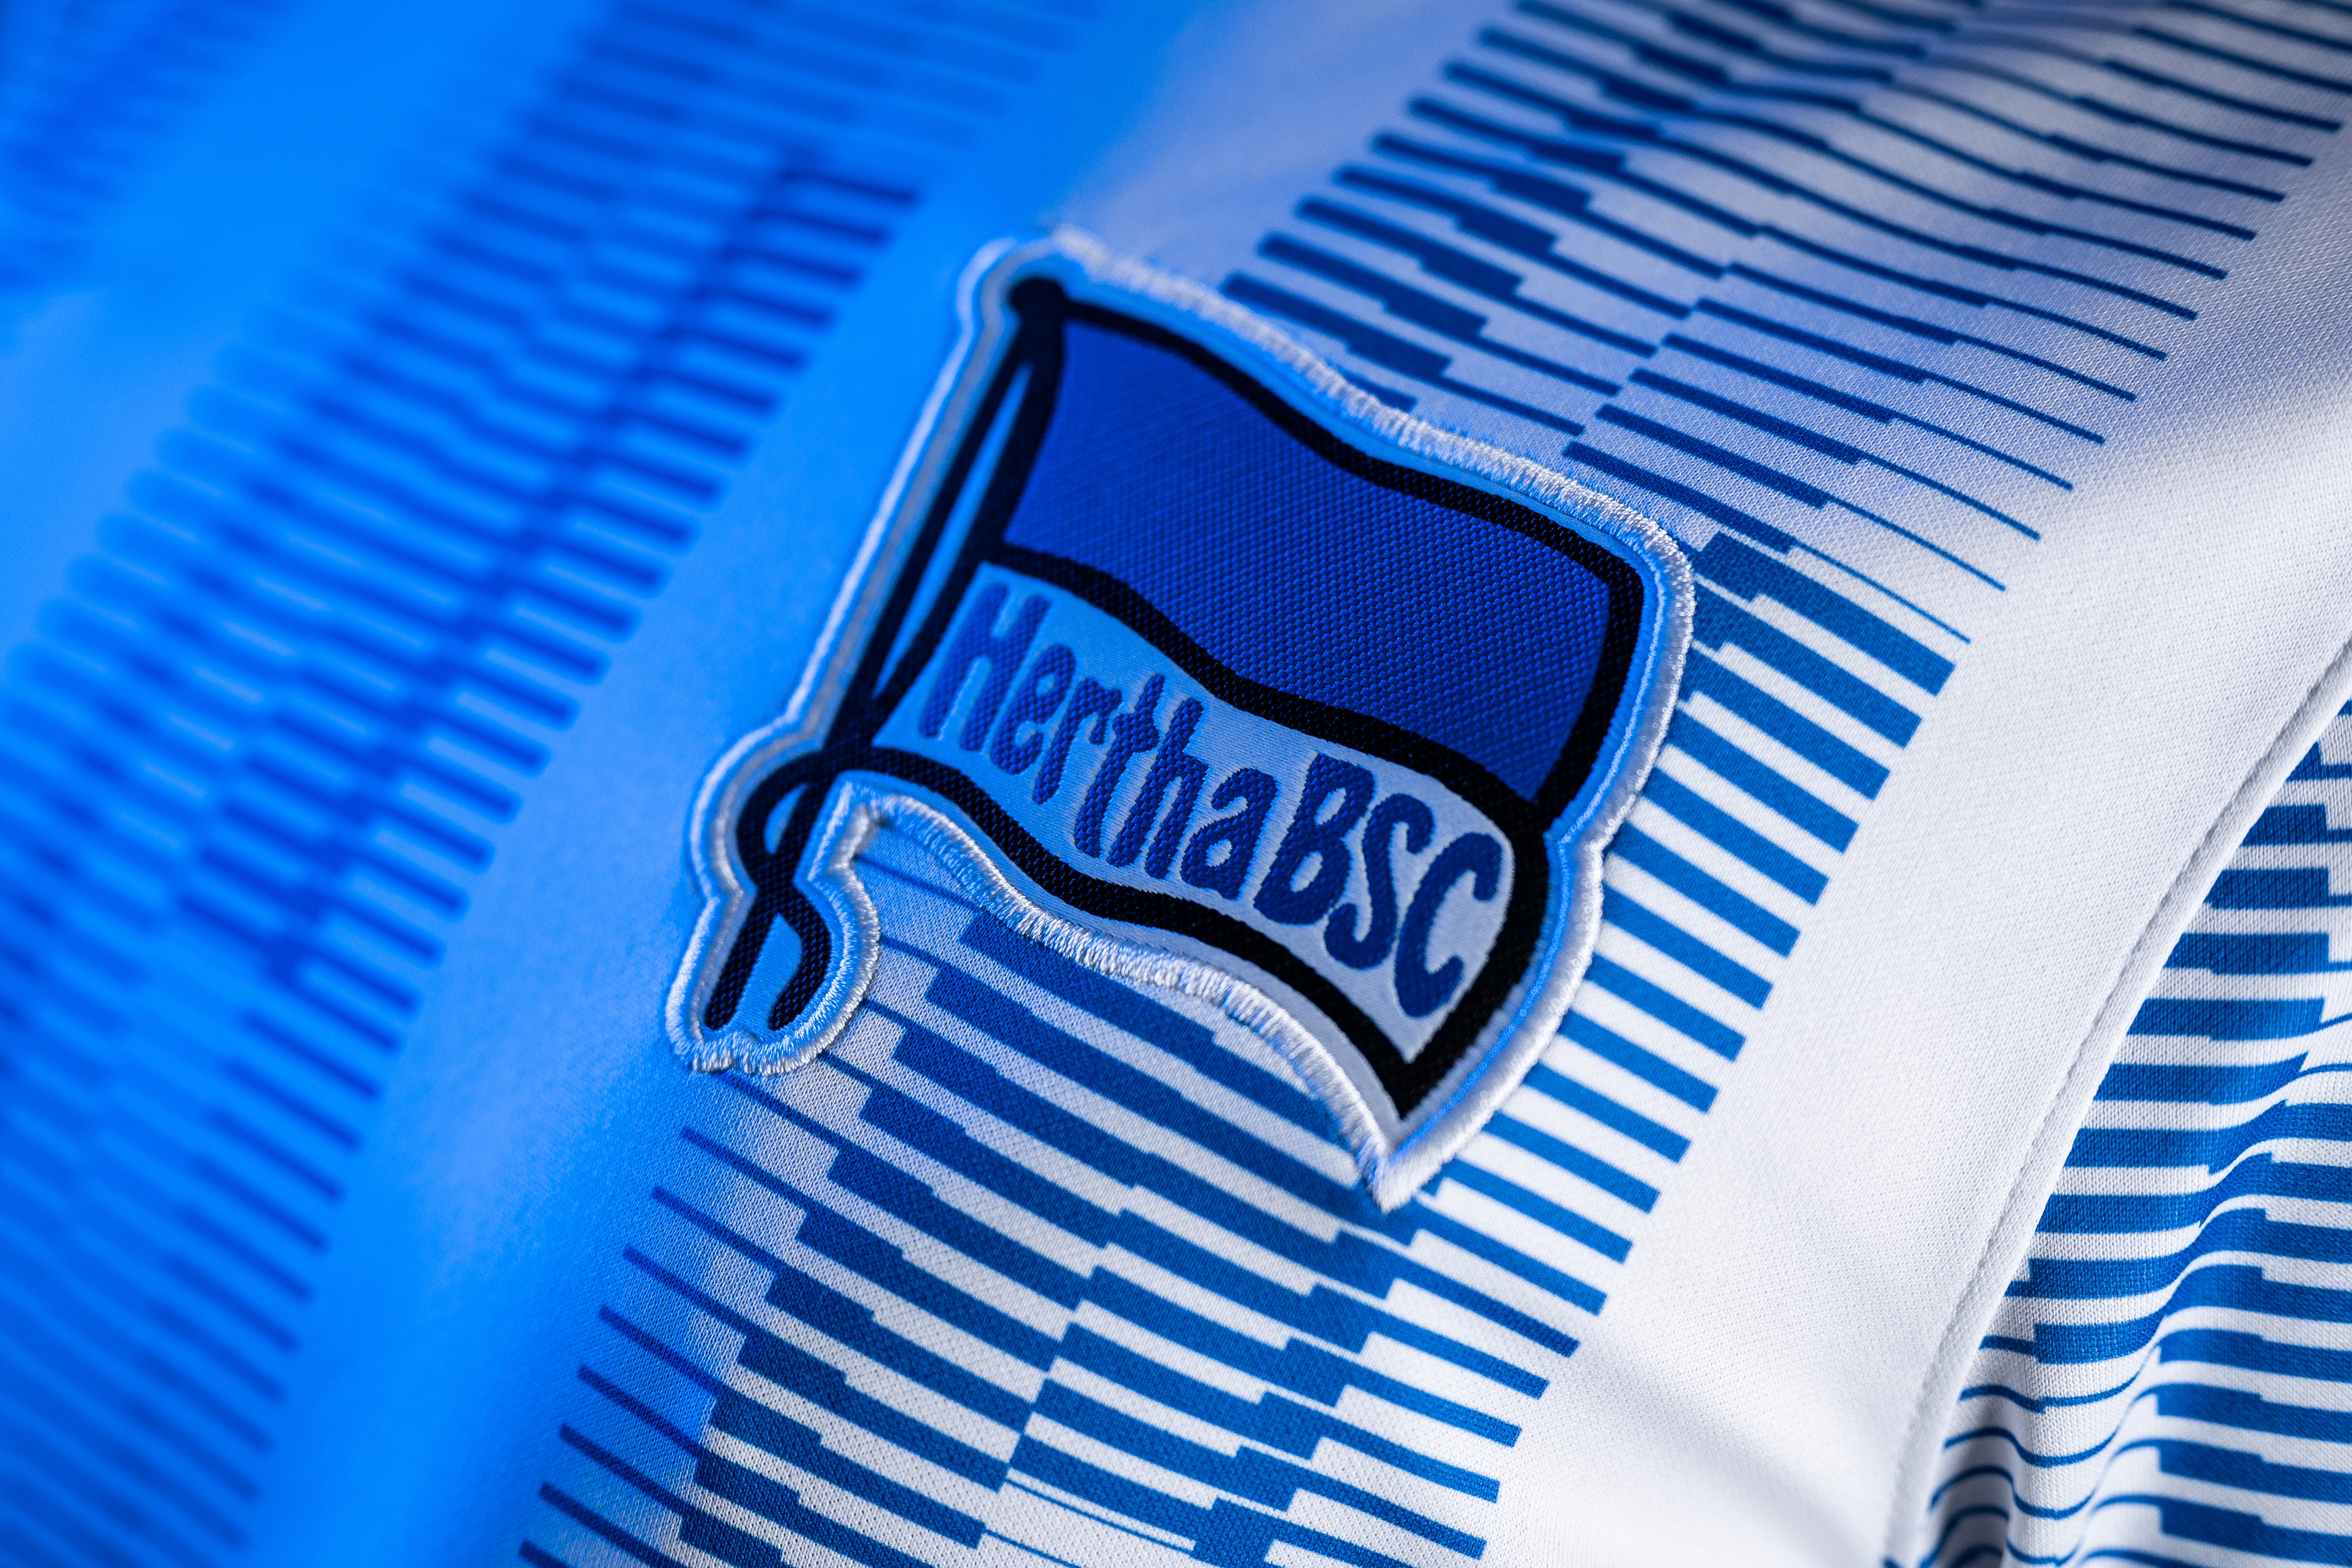 Unsere blau-weiße Hertha-Fahne auf unserem Heimtrikot.